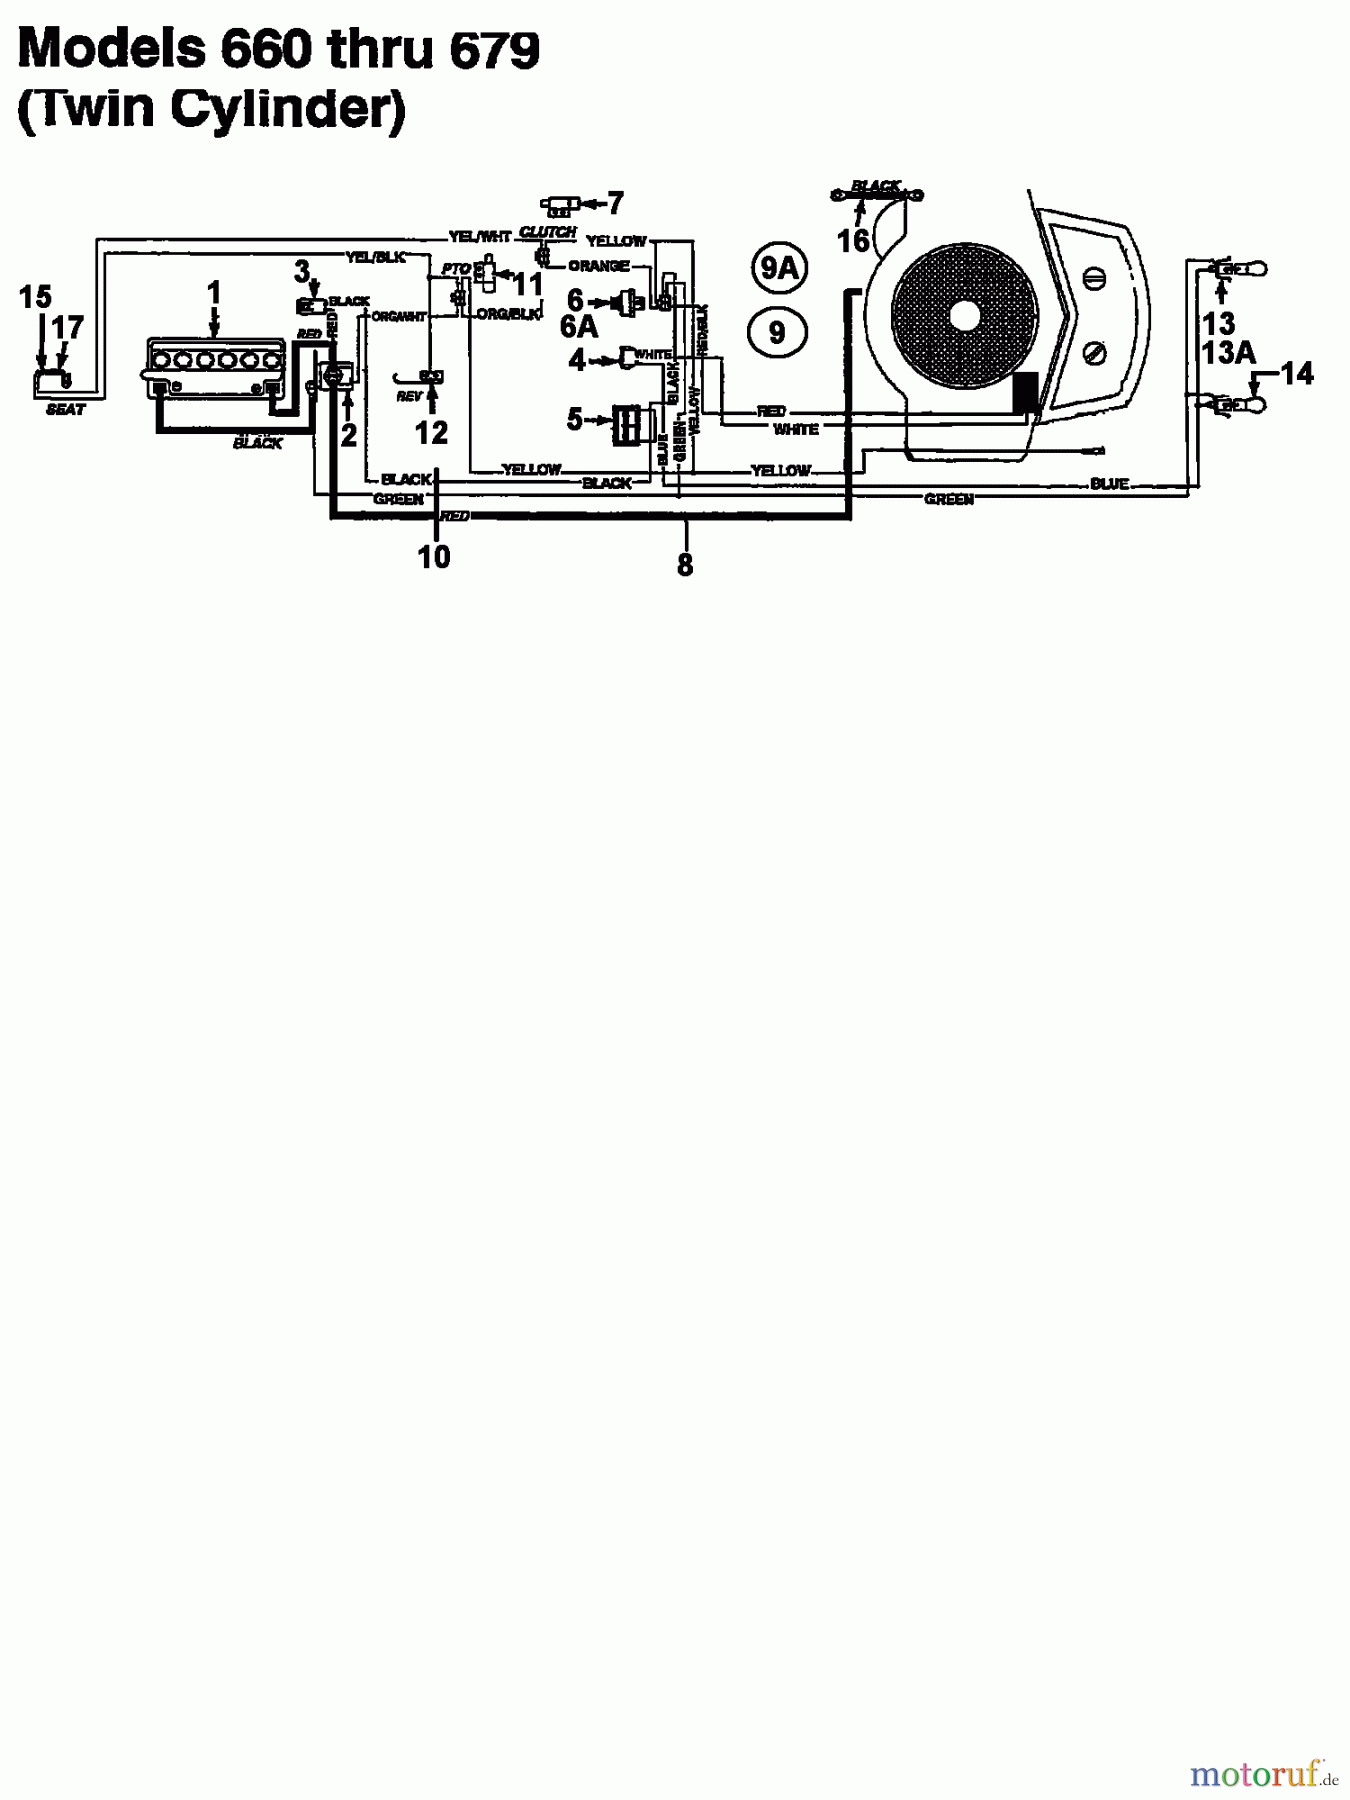  Raiffeisen Tracteurs de pelouse 112 ESL 133I670F628  (1993) Plan électrique 2 cylindre